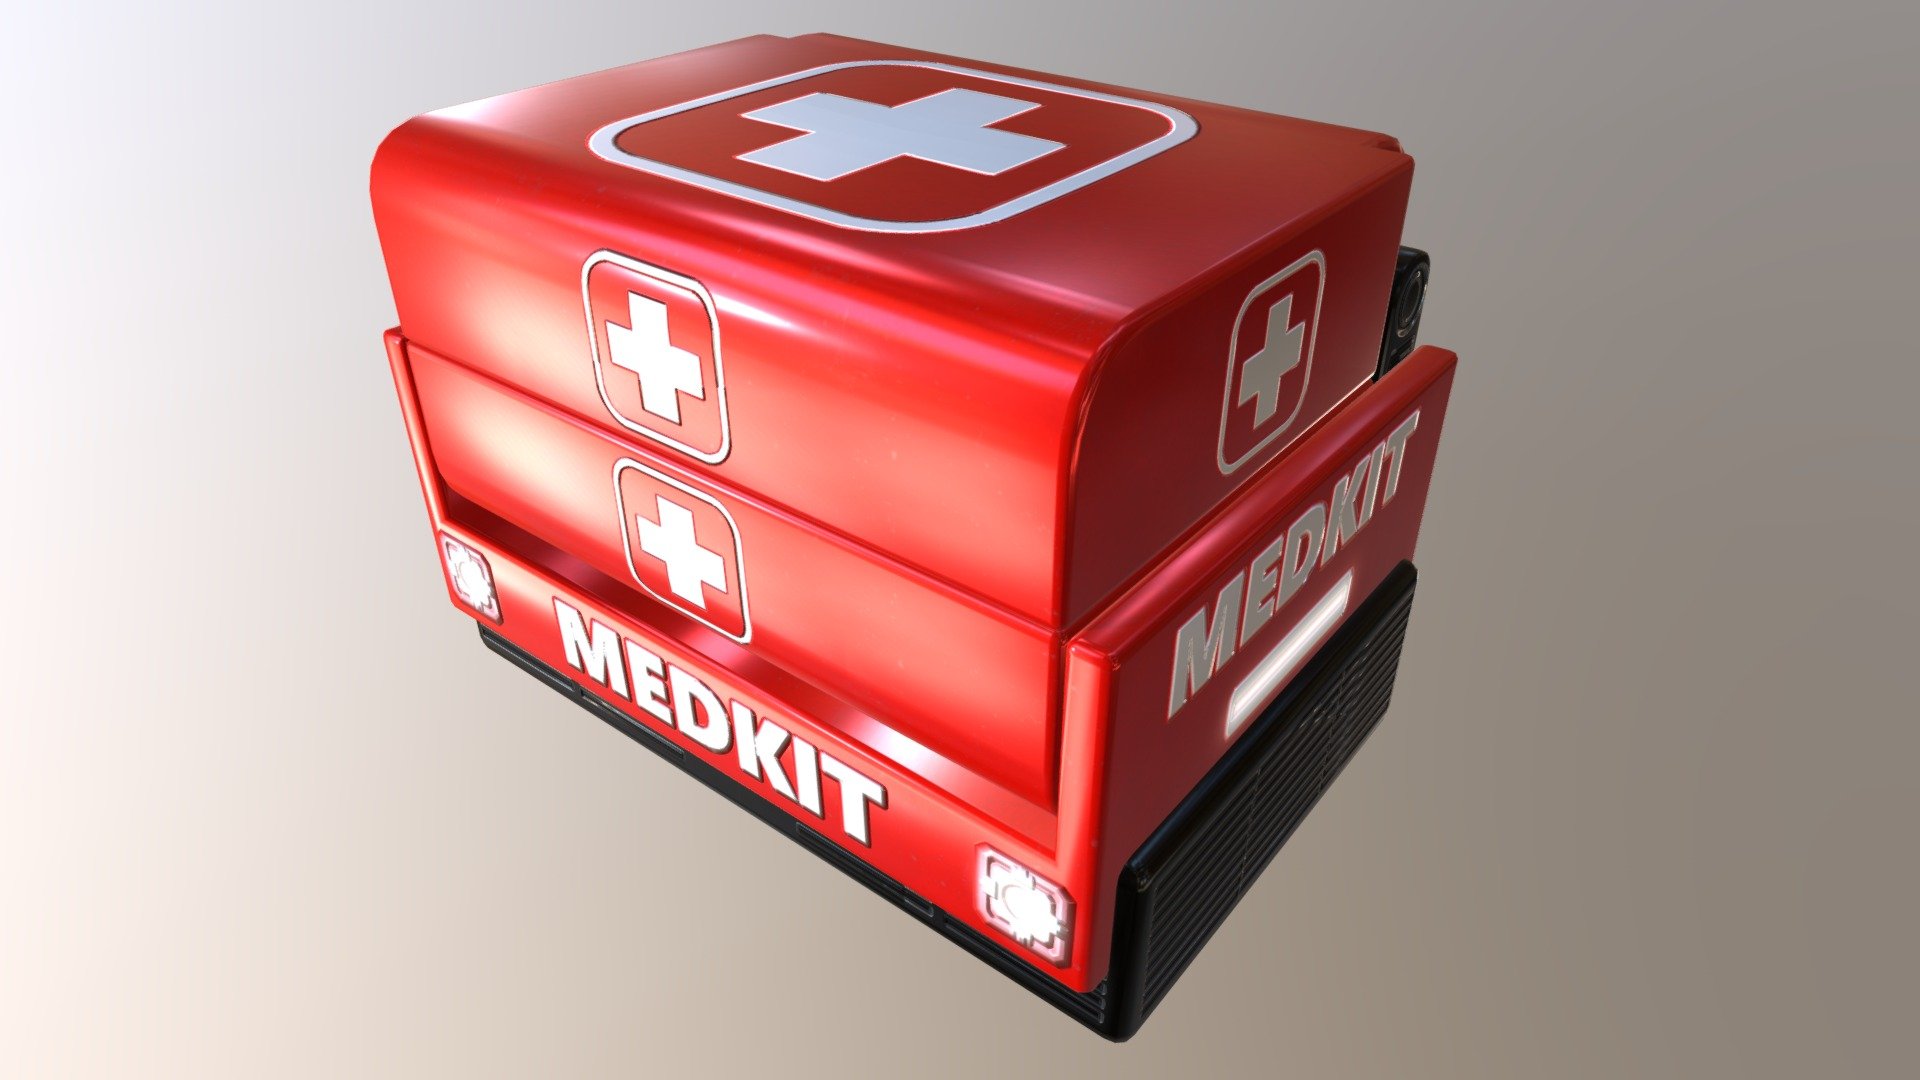 Medkit Box 7 - 3D model by Anti-Ded 3d model